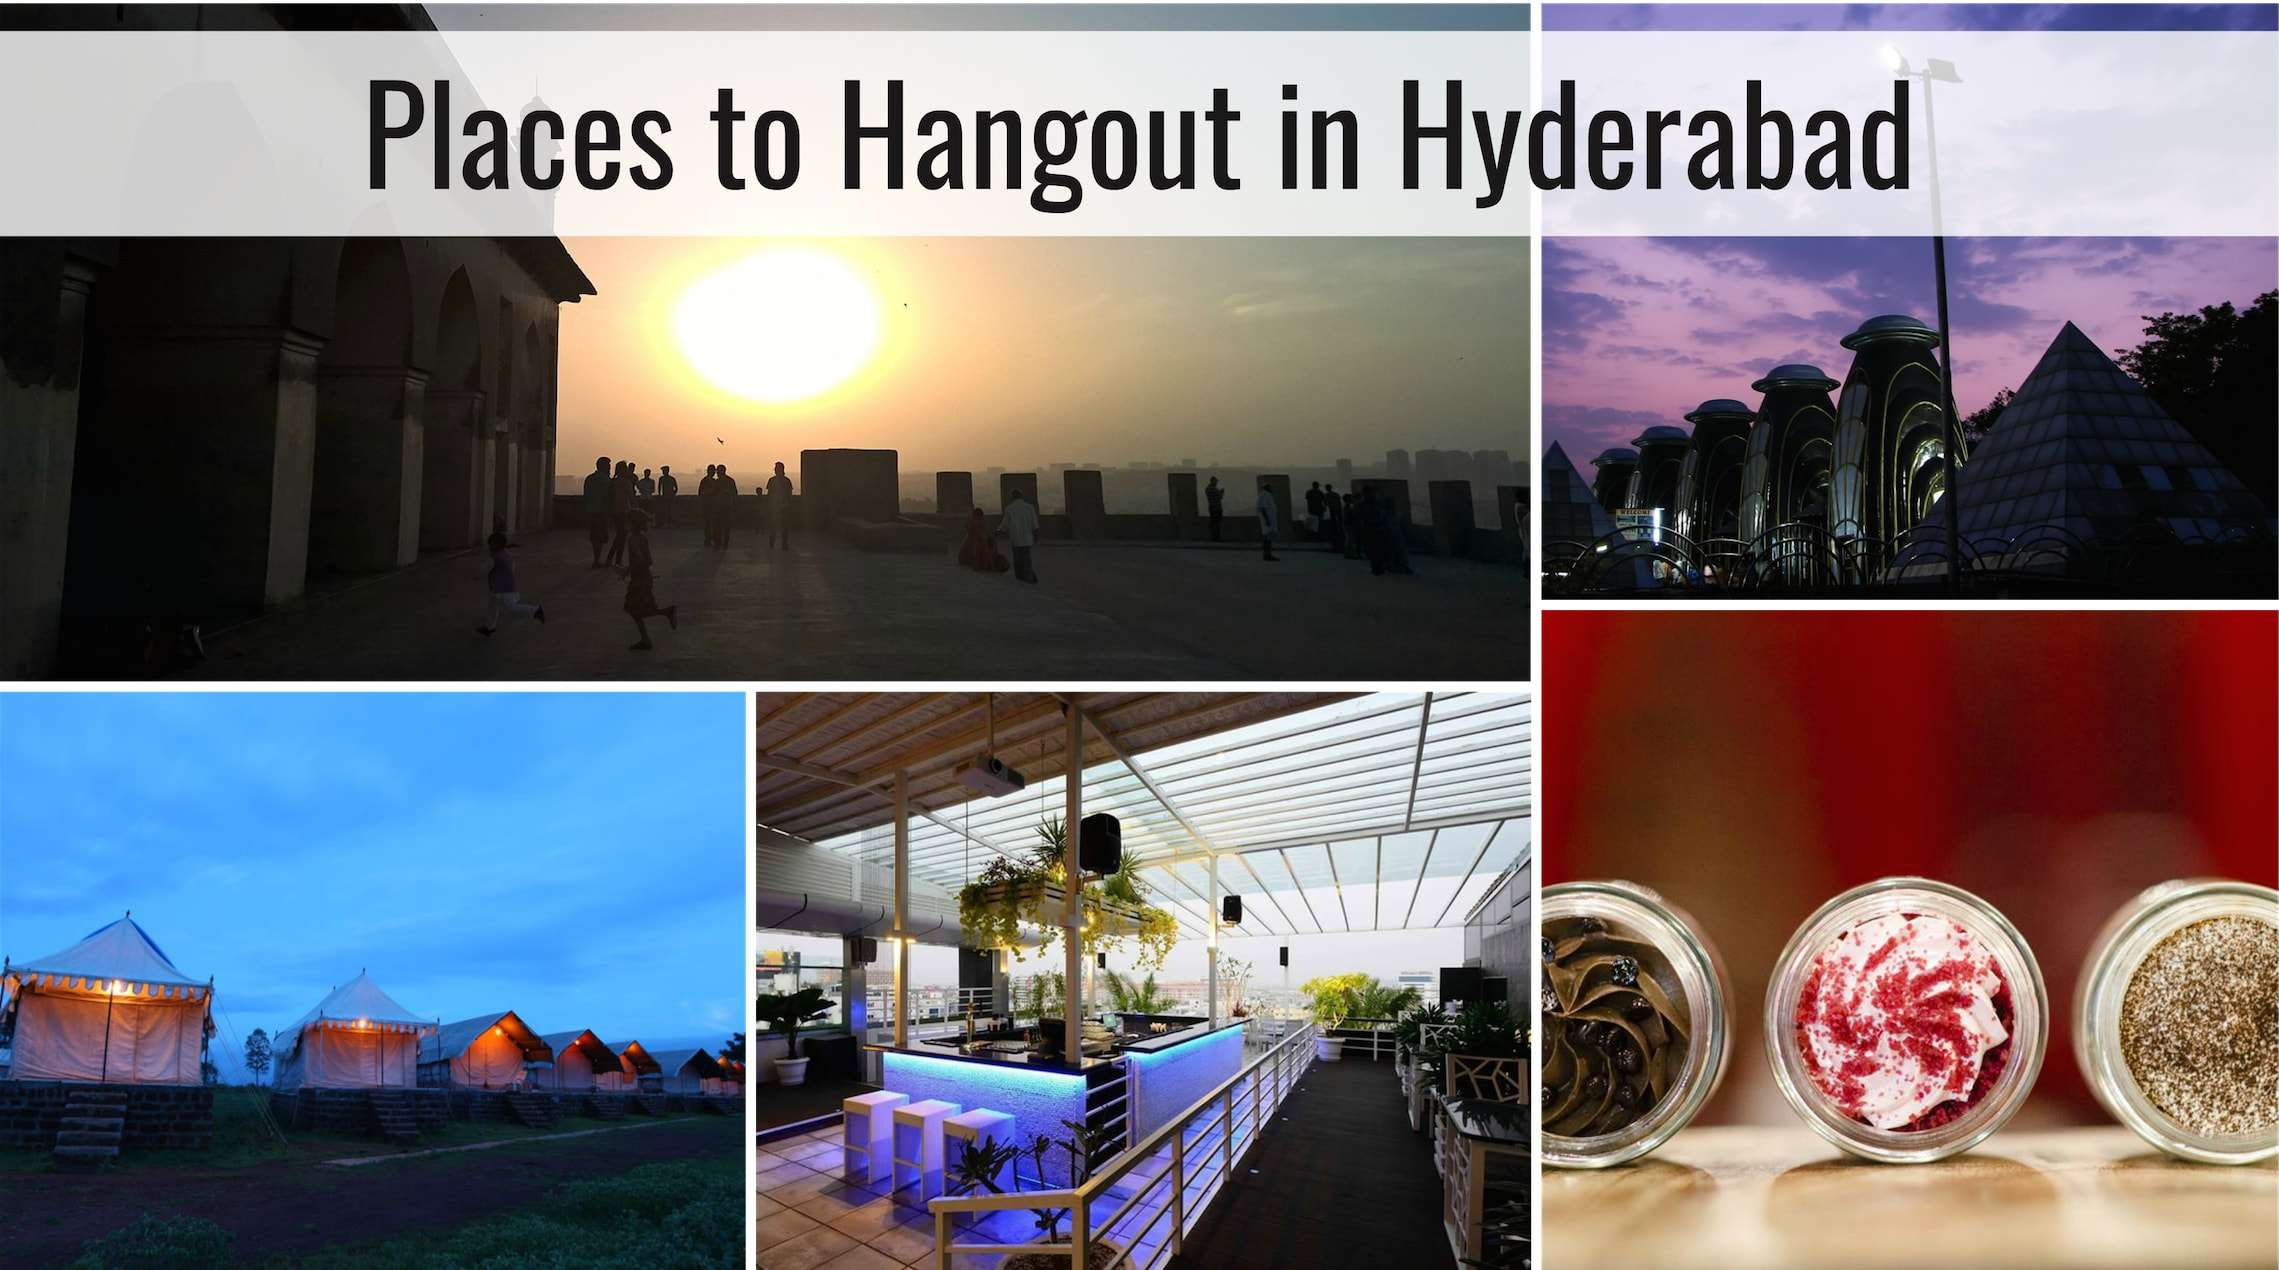 Hangout-Hyderabad.jpg